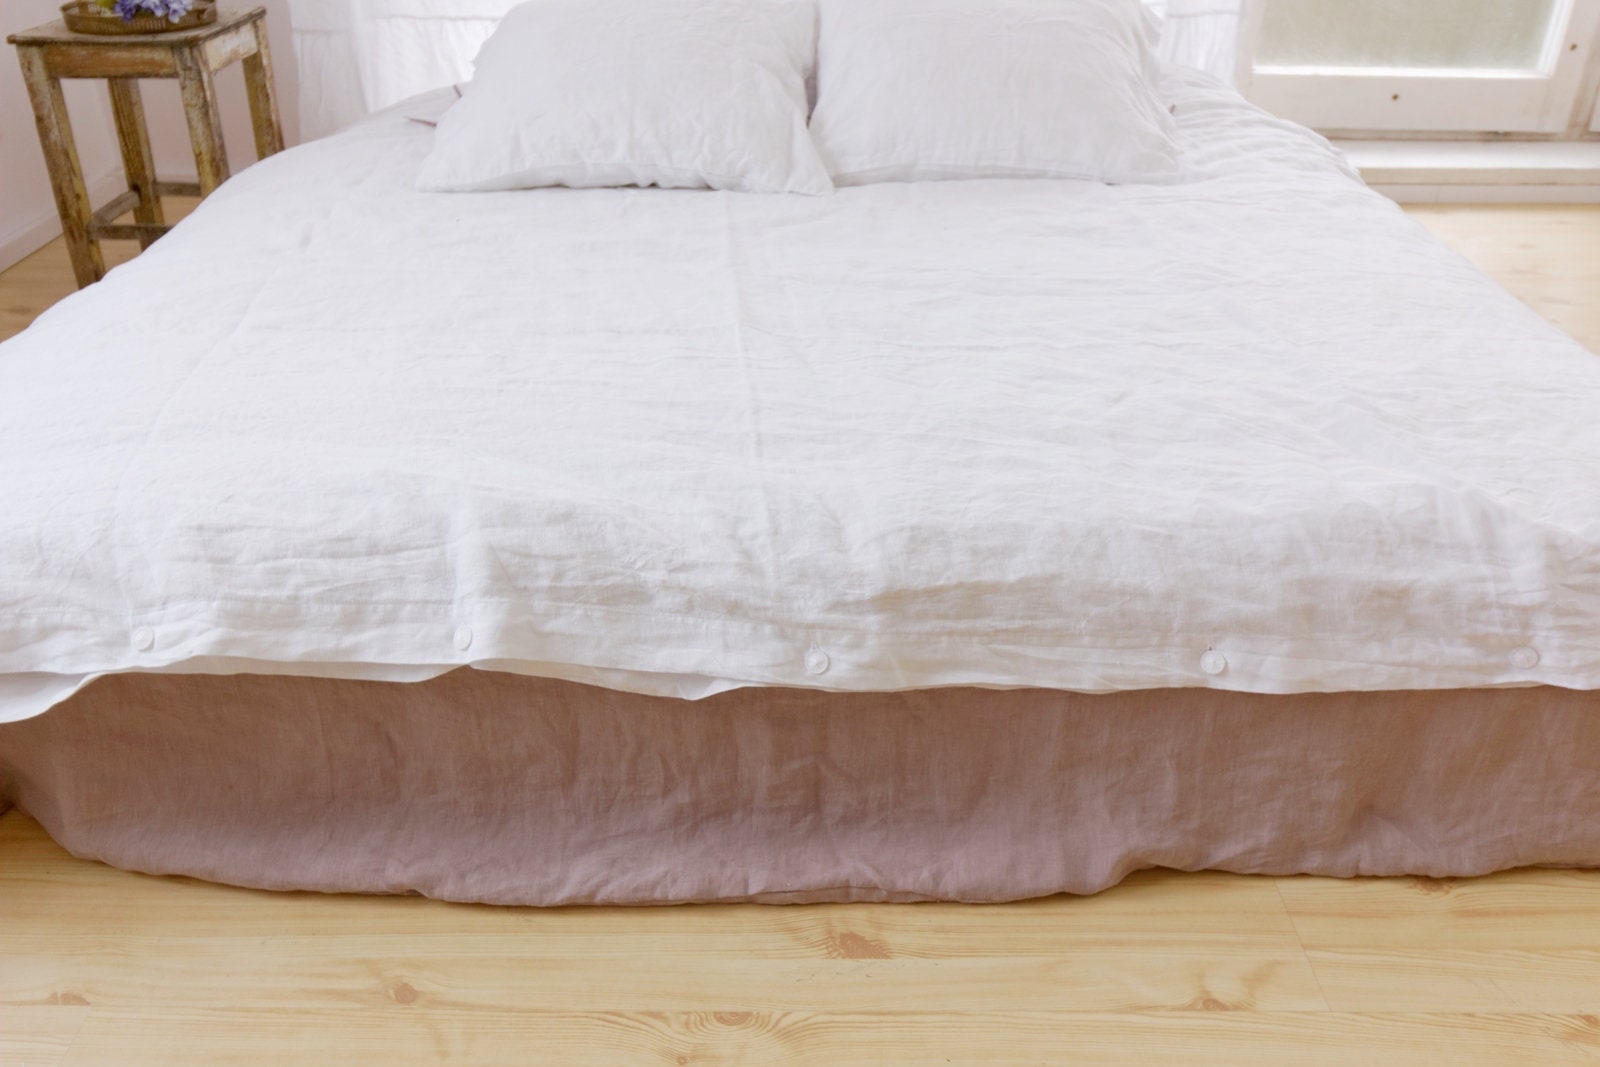 White Linen Duvet Cover With Ruffles Natural Linen Bedding Etsy